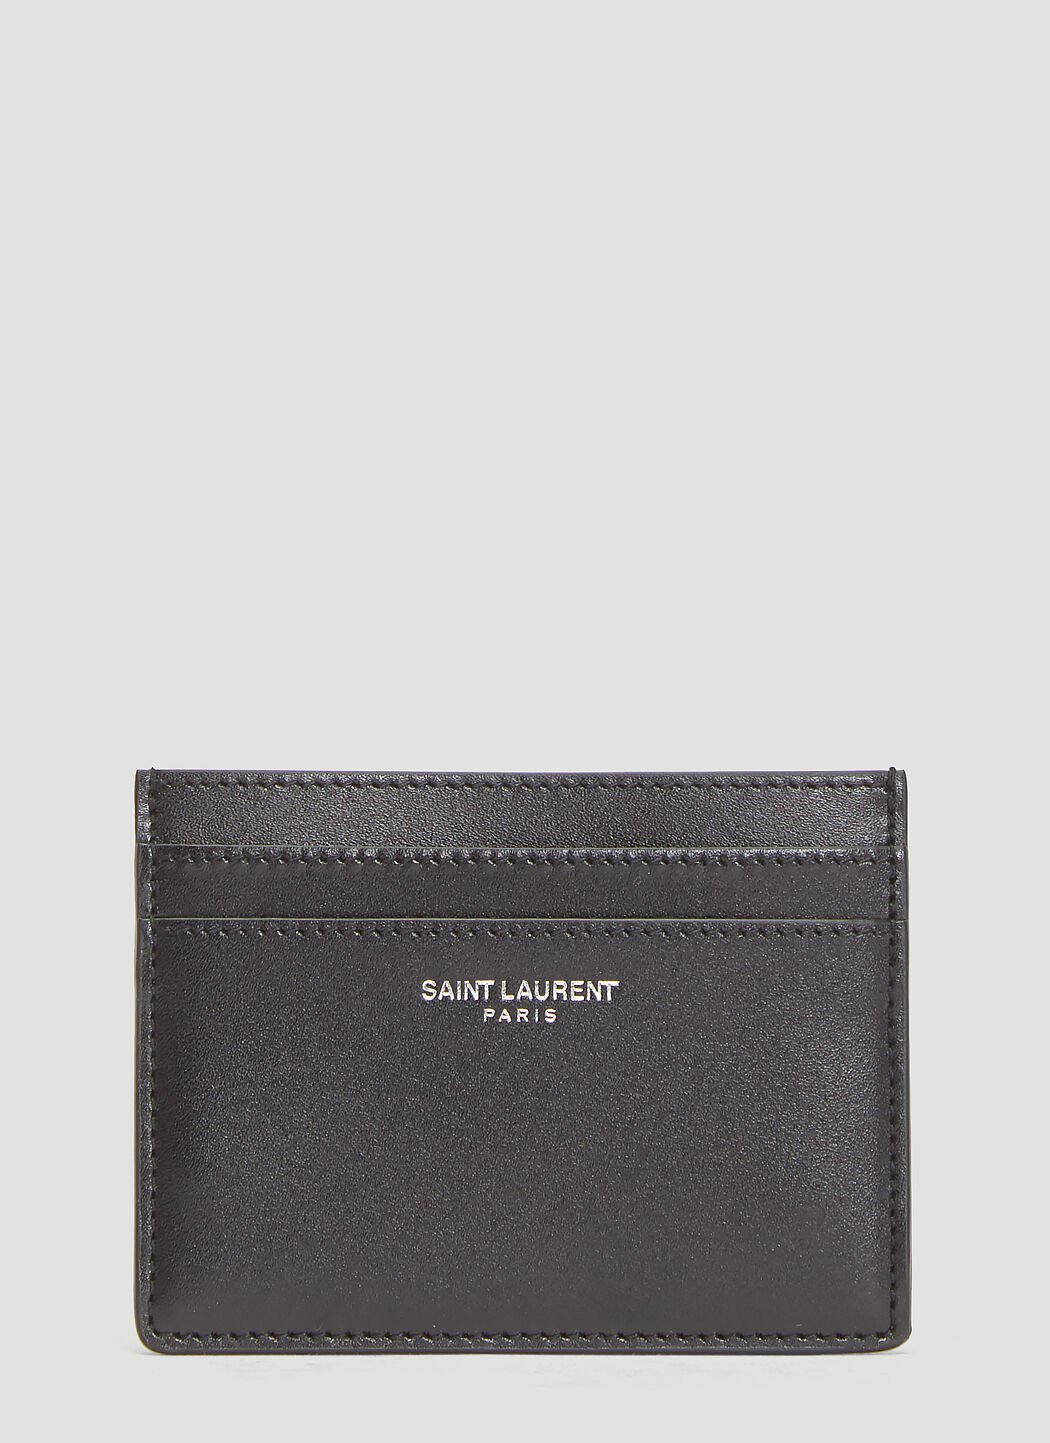 Saint Laurent Credit Card Holder Black sla0141037